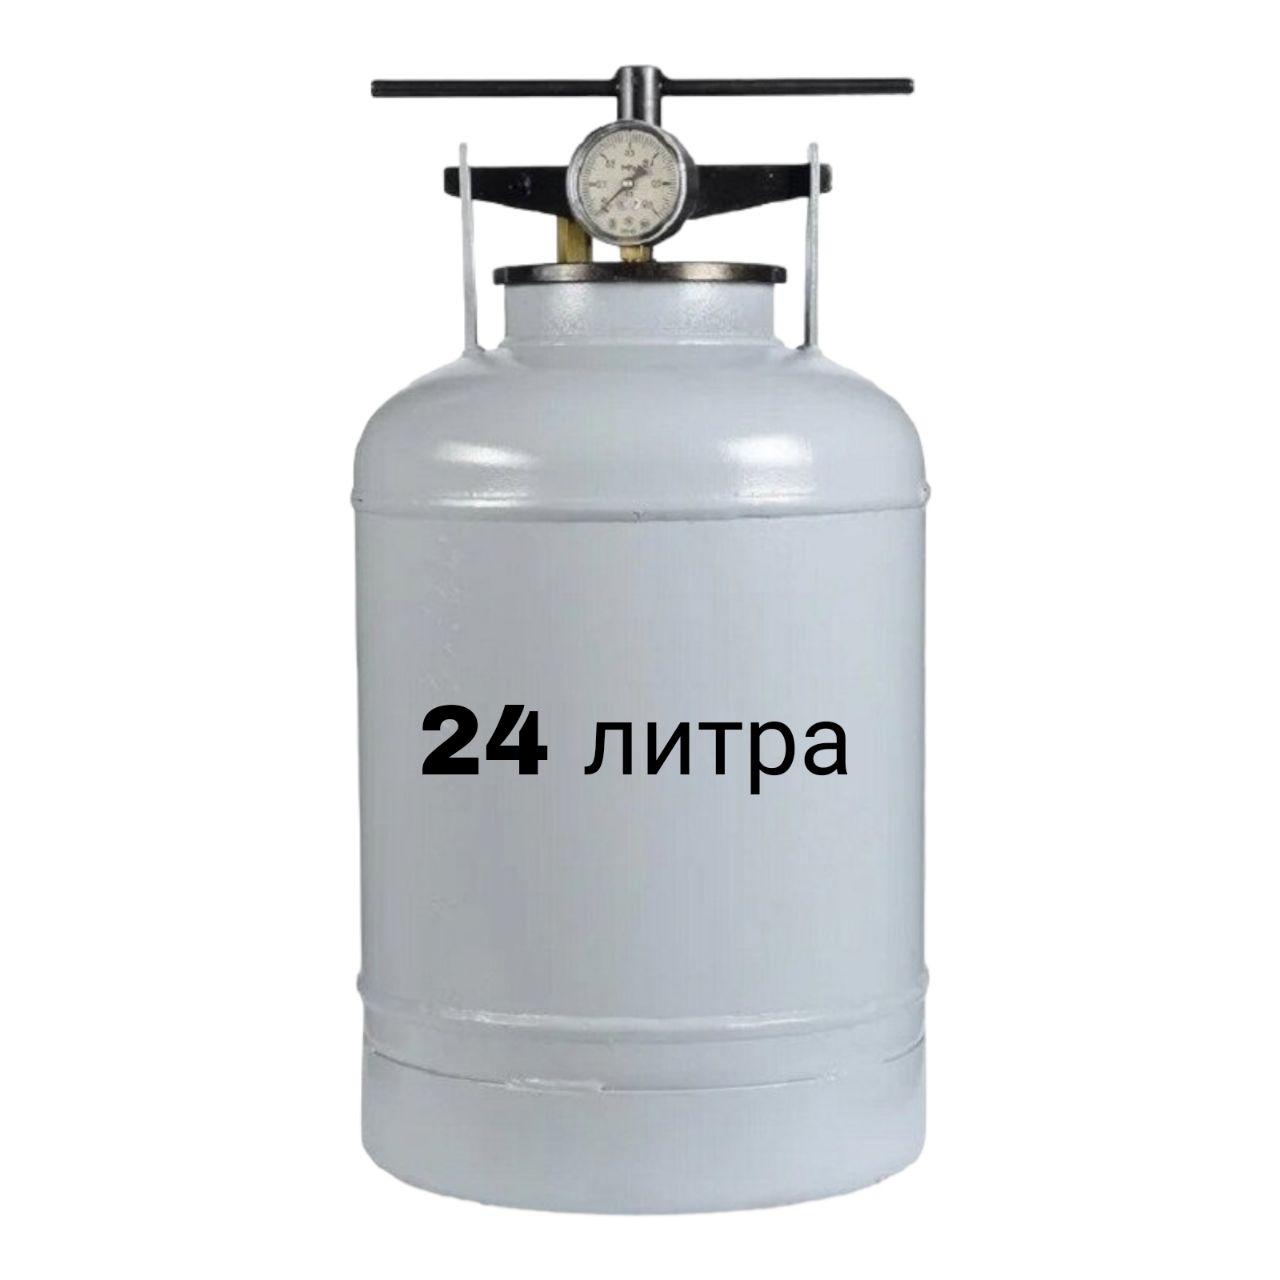 Автоклав 24 литра